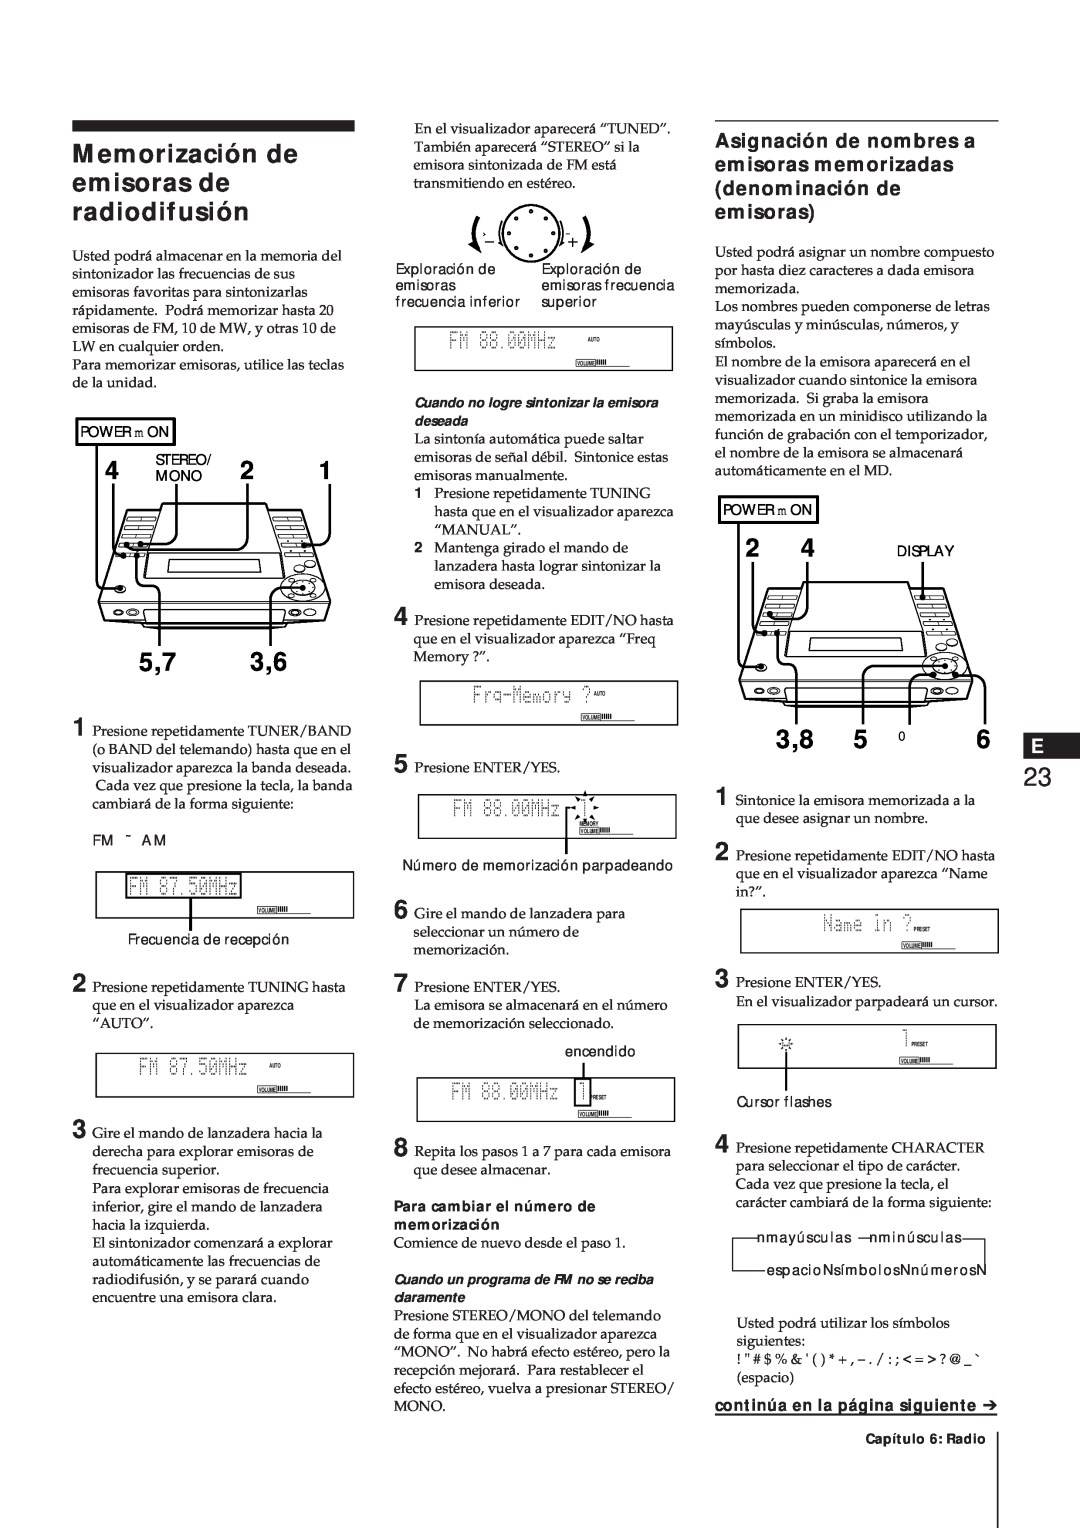 Sony MJ-L1A manual Memorización de emisoras de radiodifusión, 5,7 3,6, 3,8 5, continúa en la página siguiente 